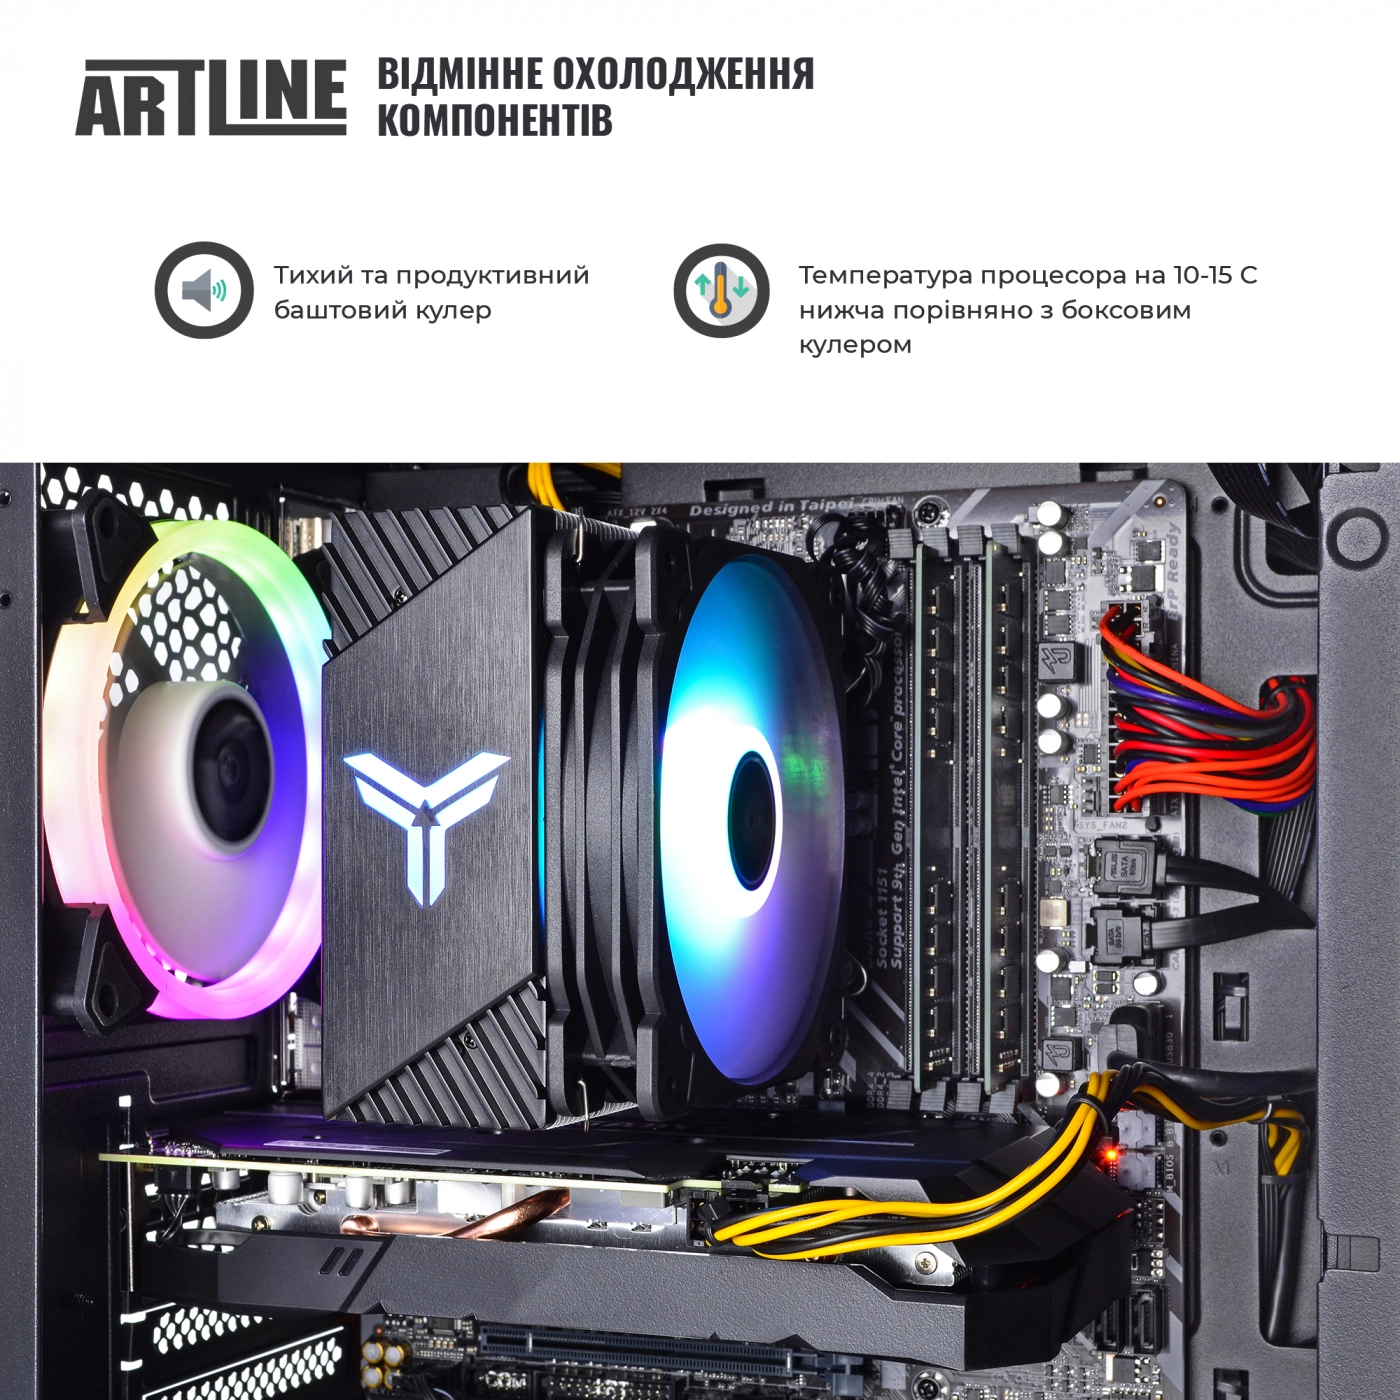 Купить Компьютер ARTLINE Gaming X71v50 - фото 4